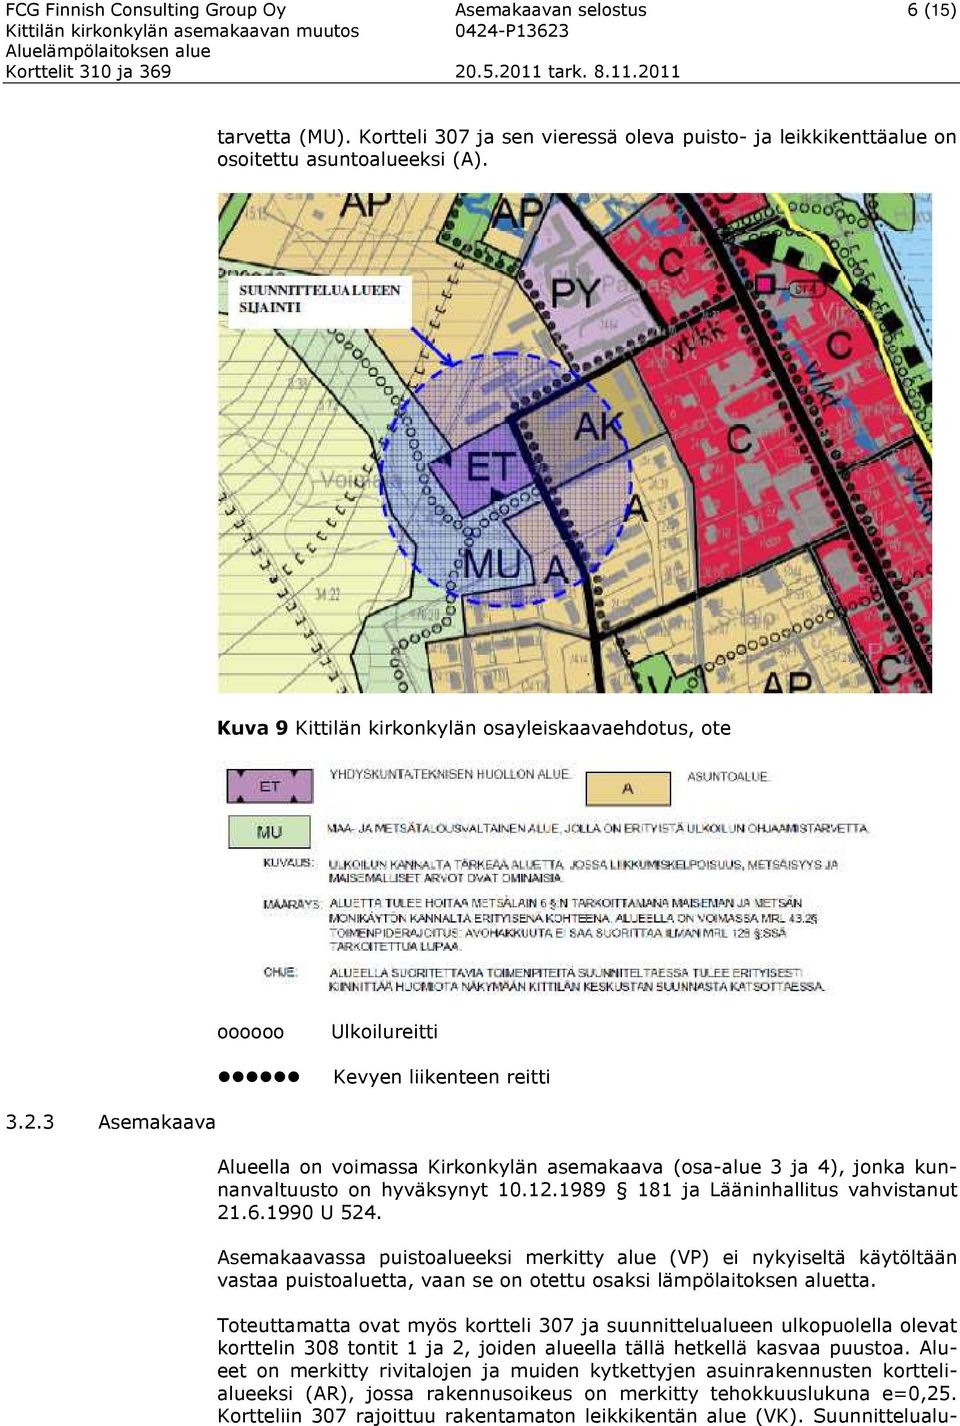 3 Asemakaava Alueella on voimassa Kirkonkylän asemakaava (osa-alue 3 ja 4), jonka kunnanvaltuusto on hyväksynyt 10.12.1989 181 ja Lääninhallitus vahvistanut 21.6.1990 U 524.